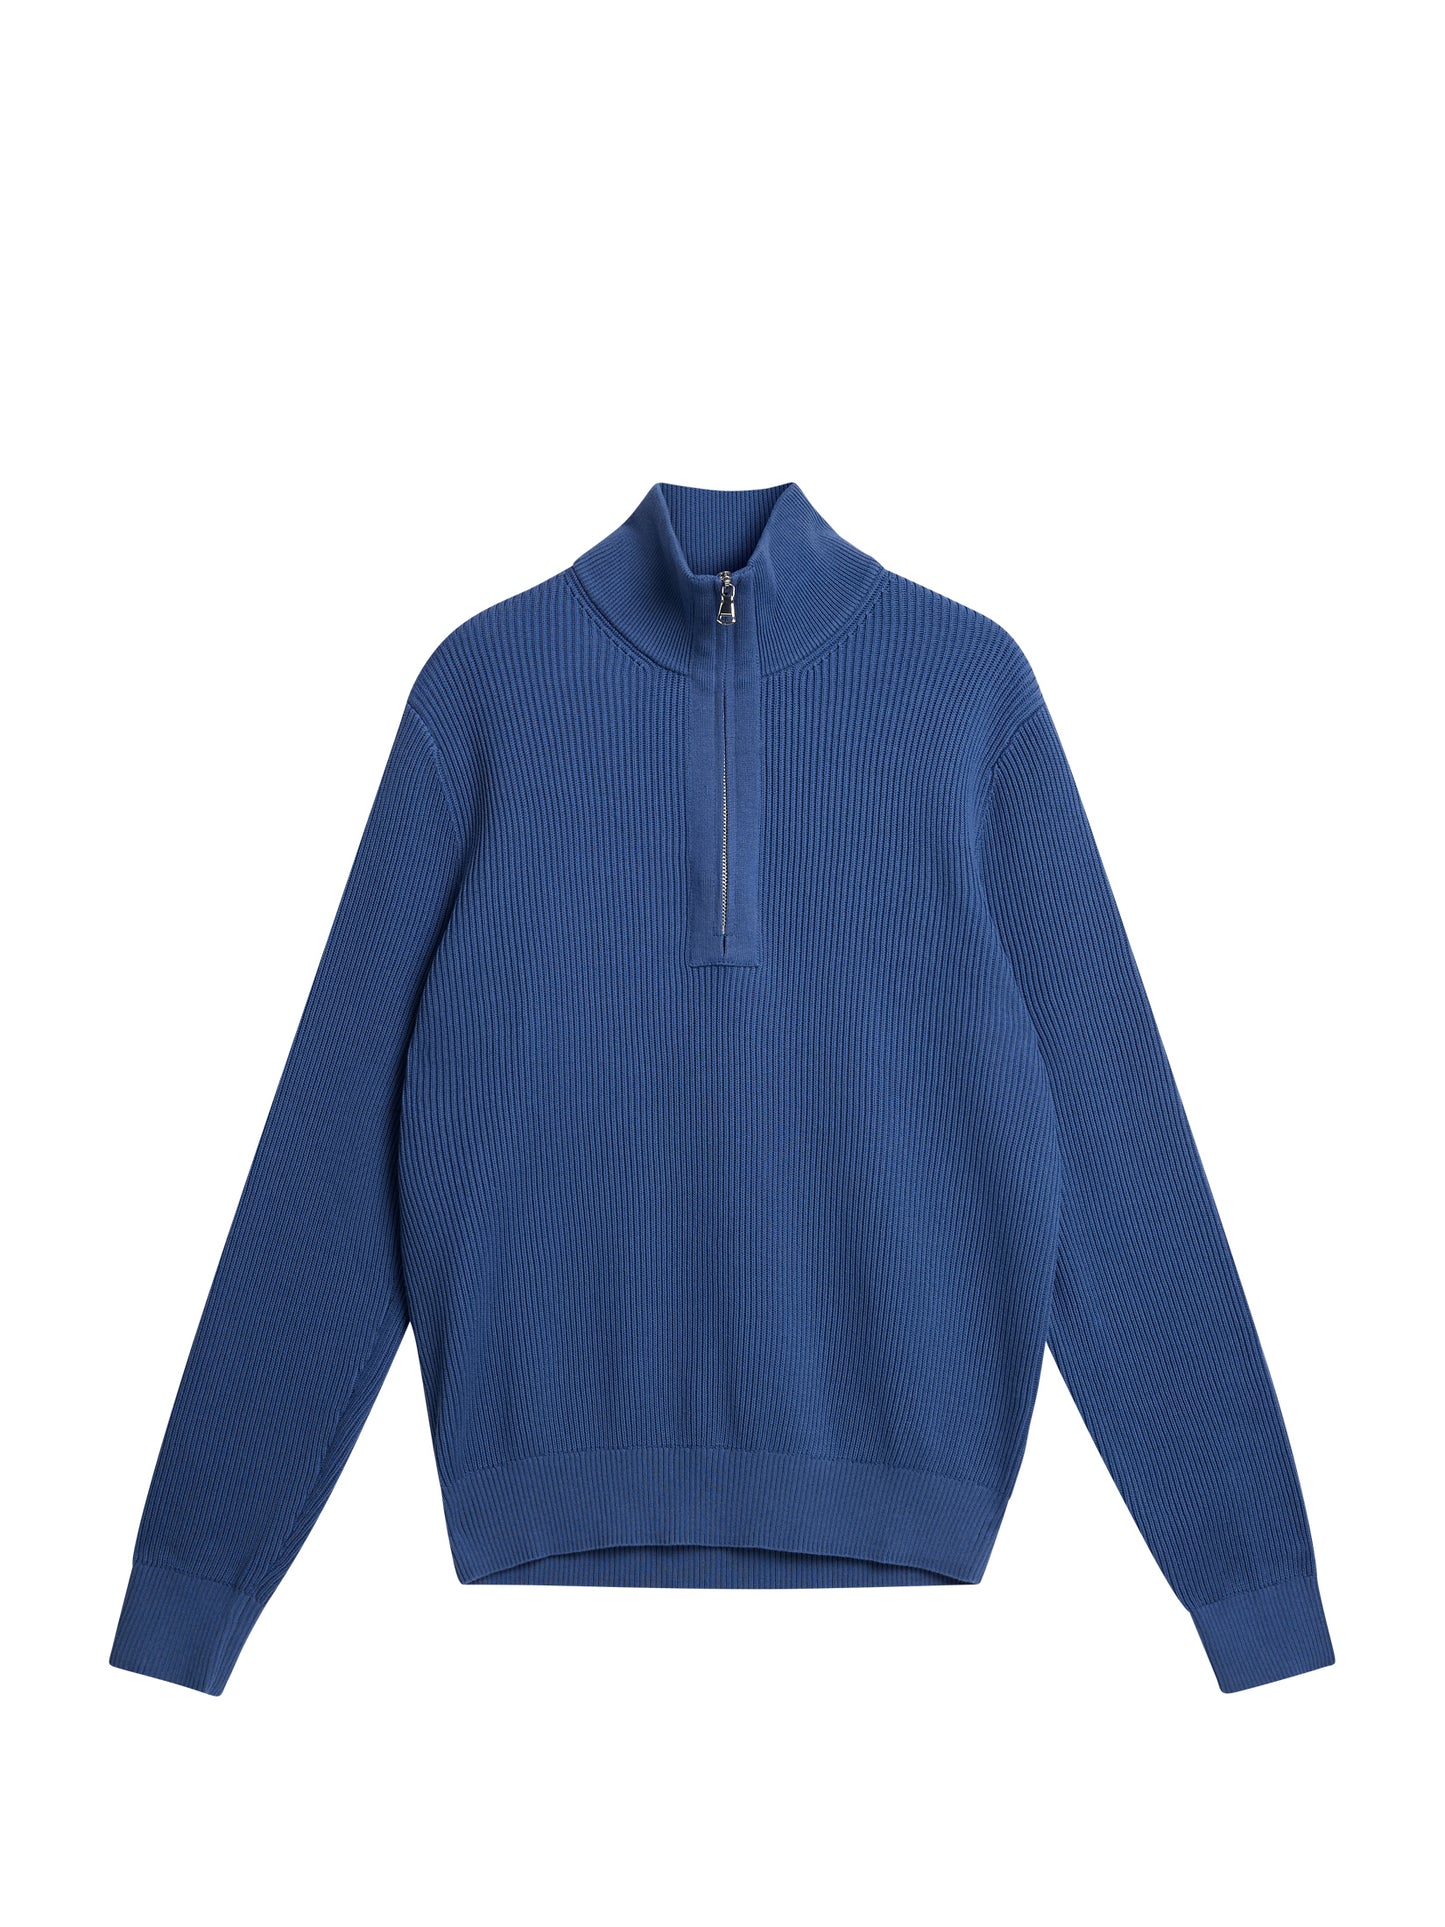 Alex Half Zip Knitted Sweater / Bijou Blue